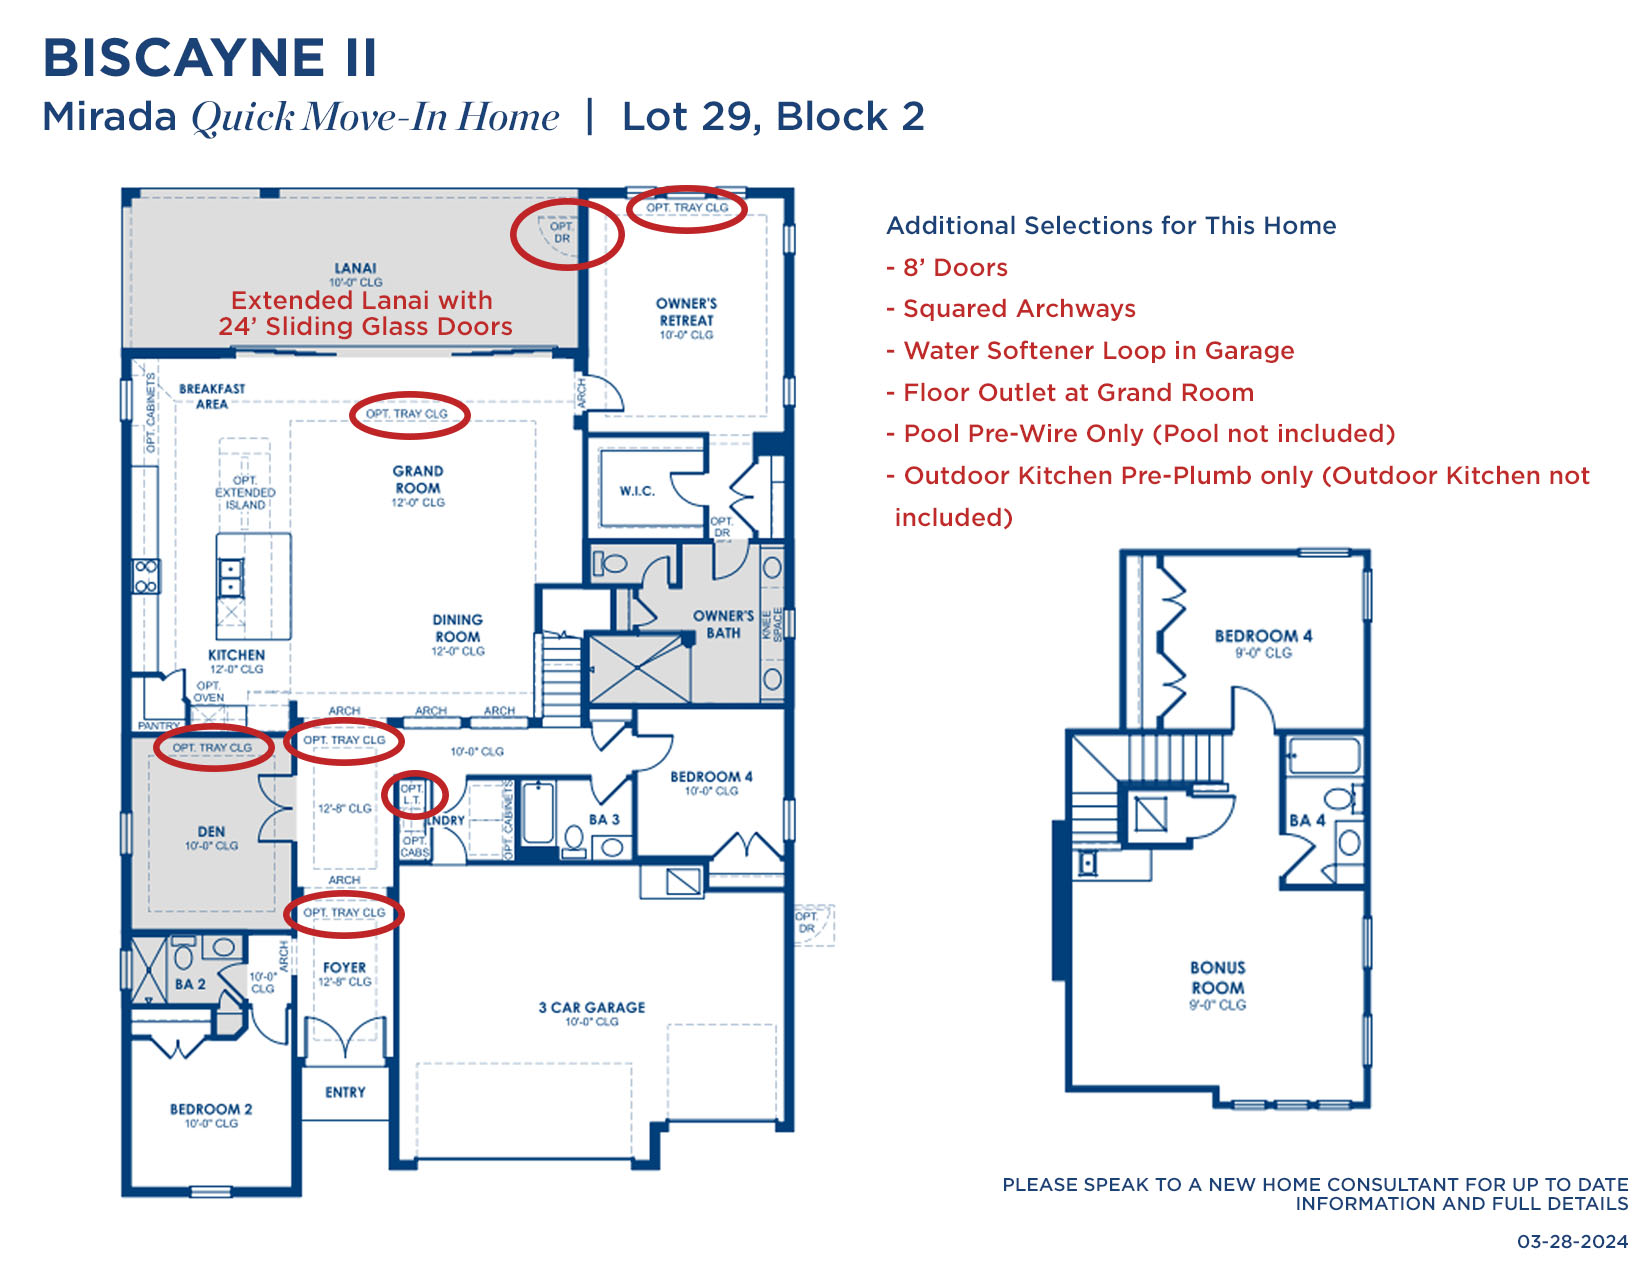 MIR BISCAYNE II 29-2 32824 Floorplan